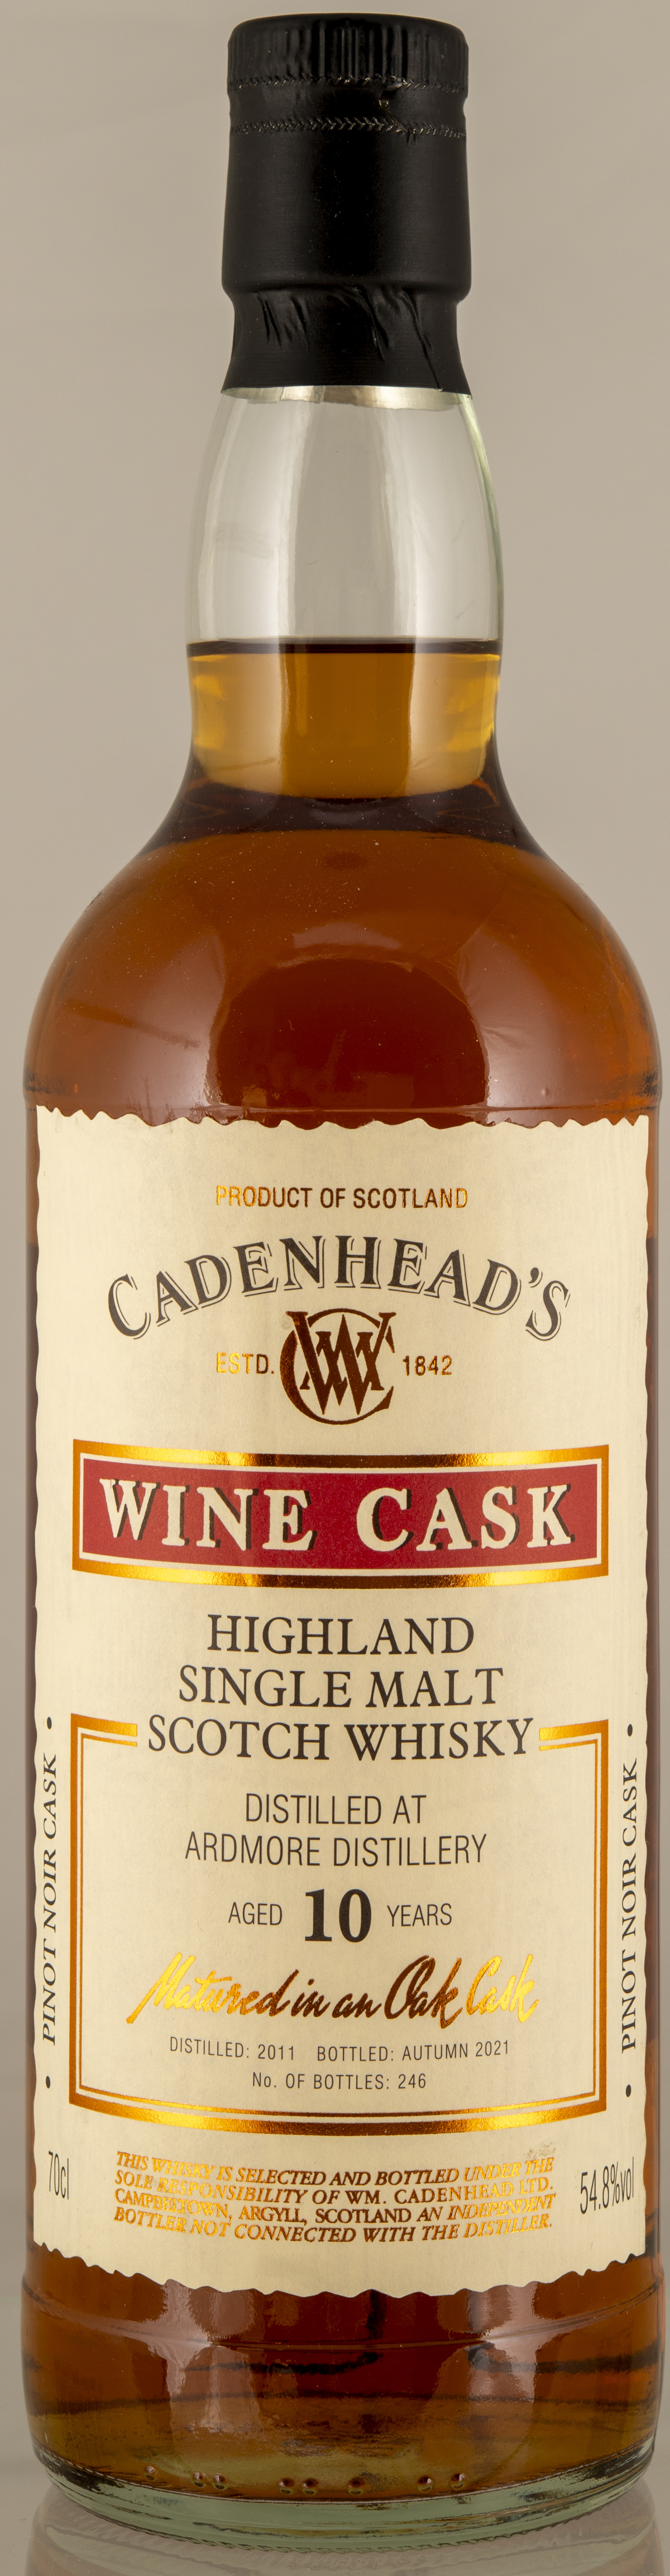 Billede: D85_8379 - Cadenheads Wine Cask Ardmore 10 - bottle front.jpg